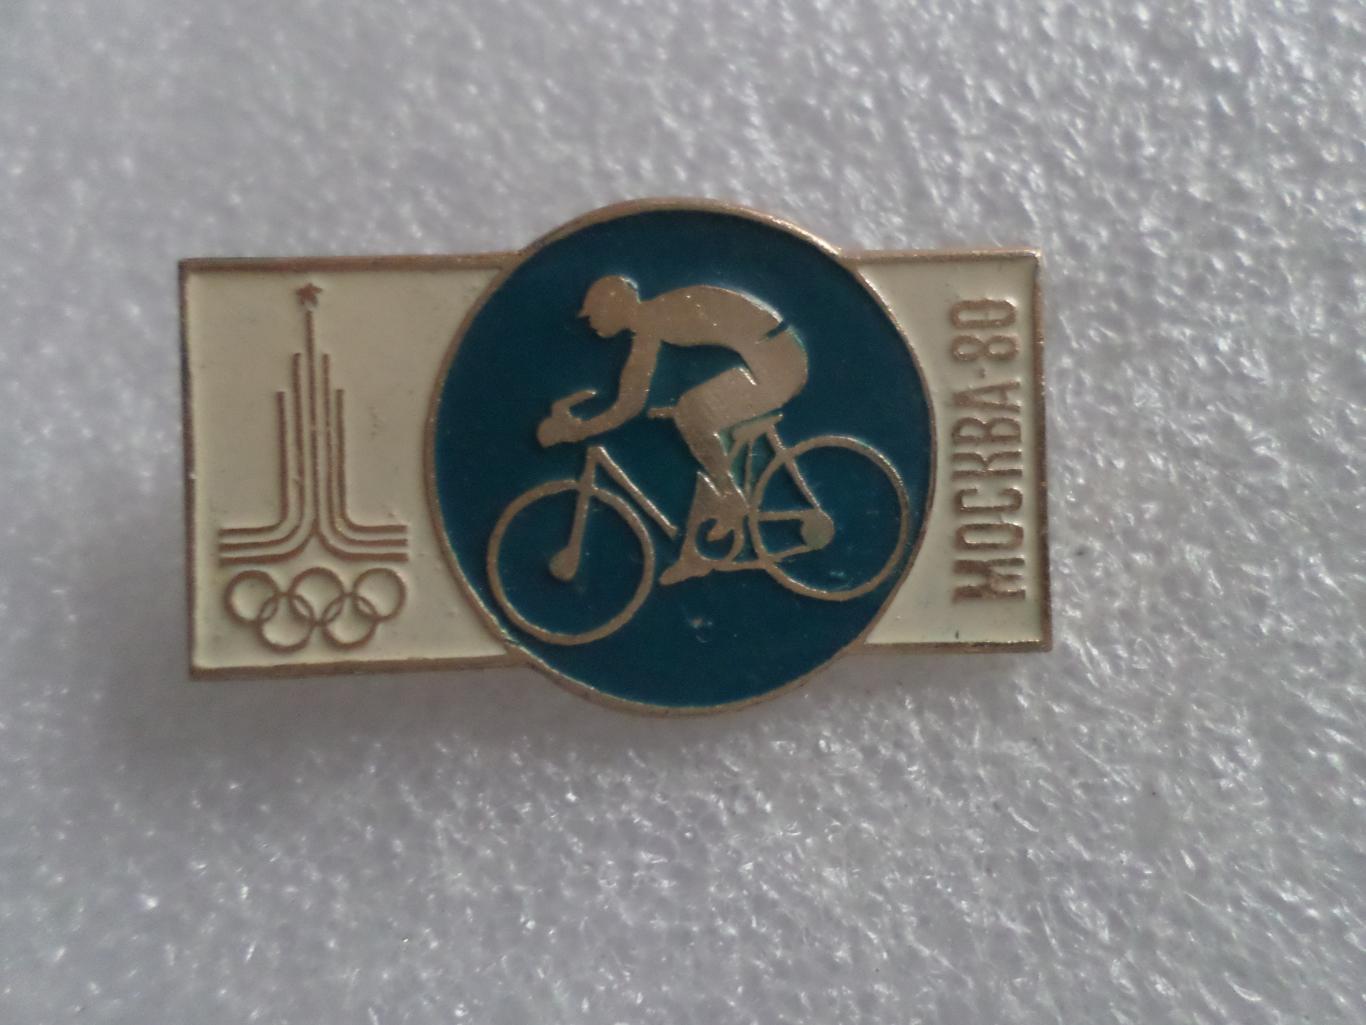 значок Олимпиада-80 Москва 1980 велоспорт